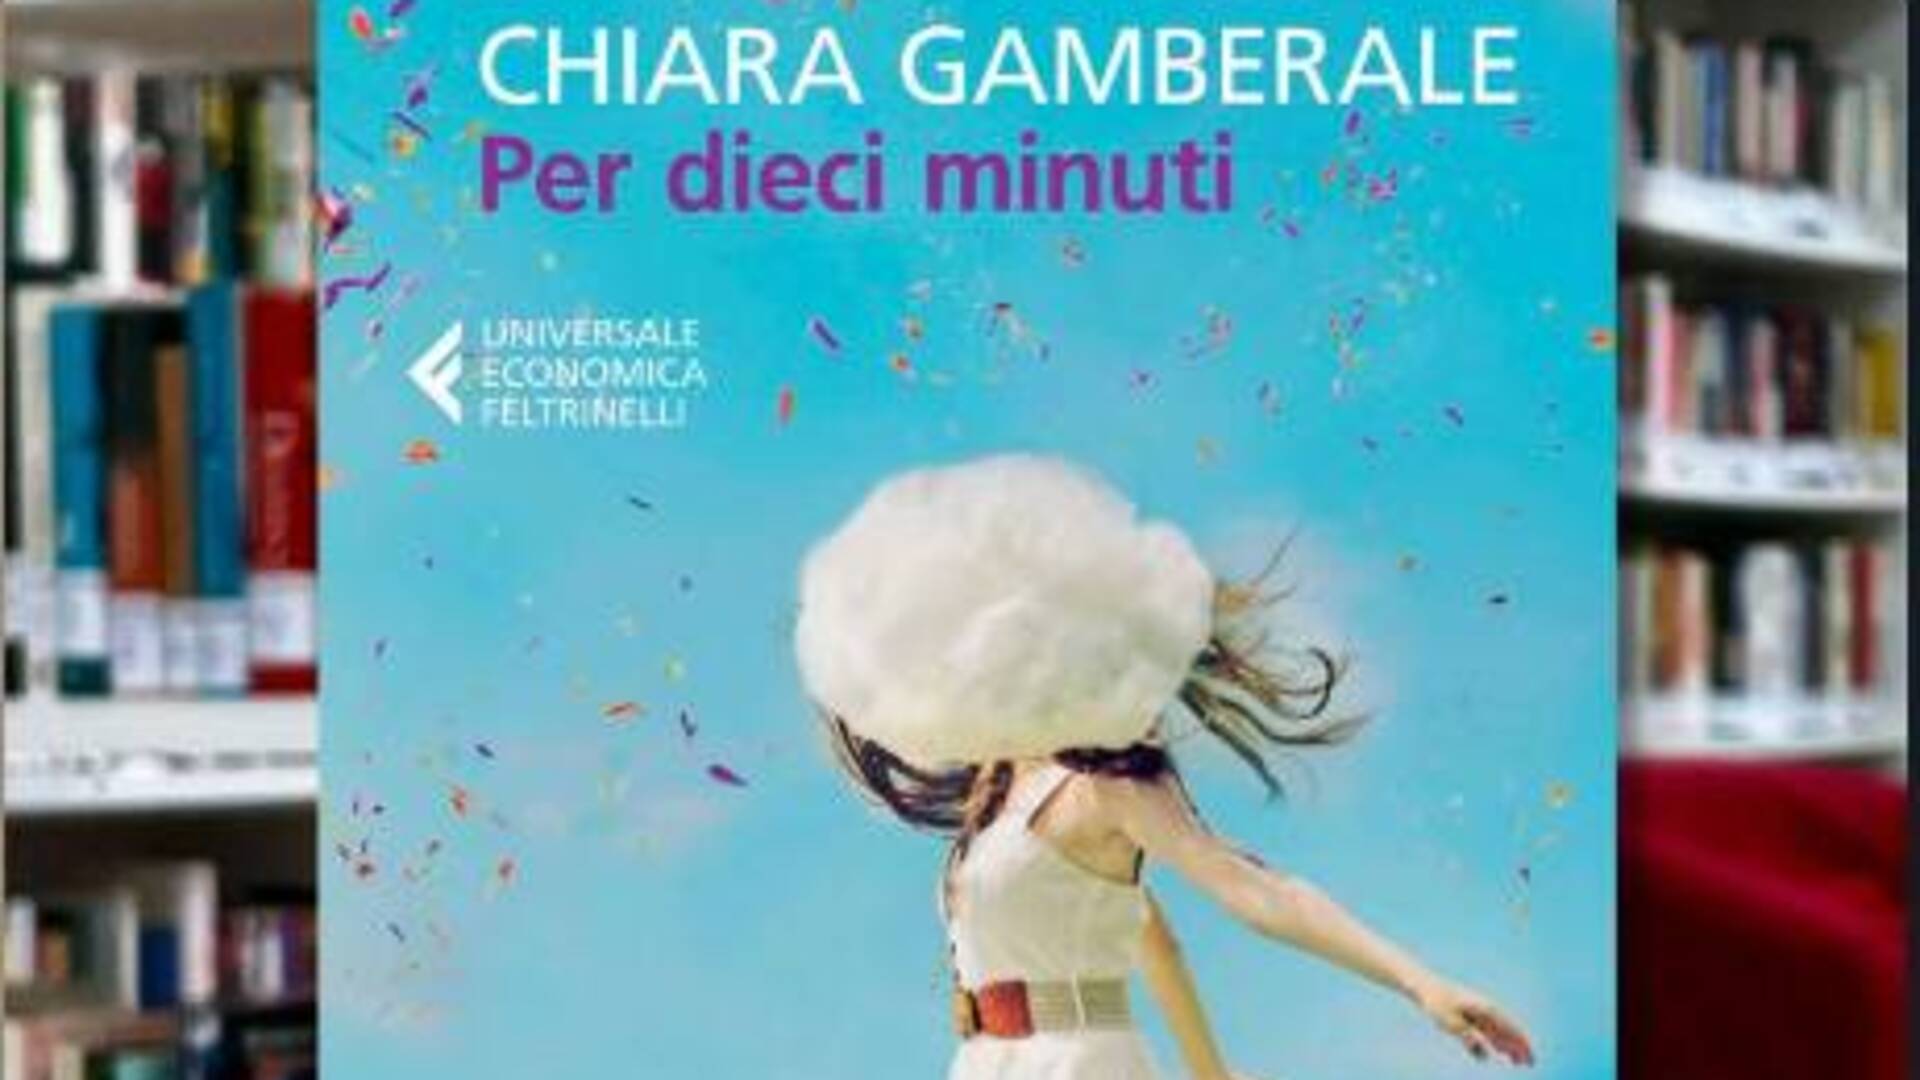 Saronno, a Casa di Marta aprile inizia con una nuova lettura: “Per dieci minuti” di Chiara Gamberale